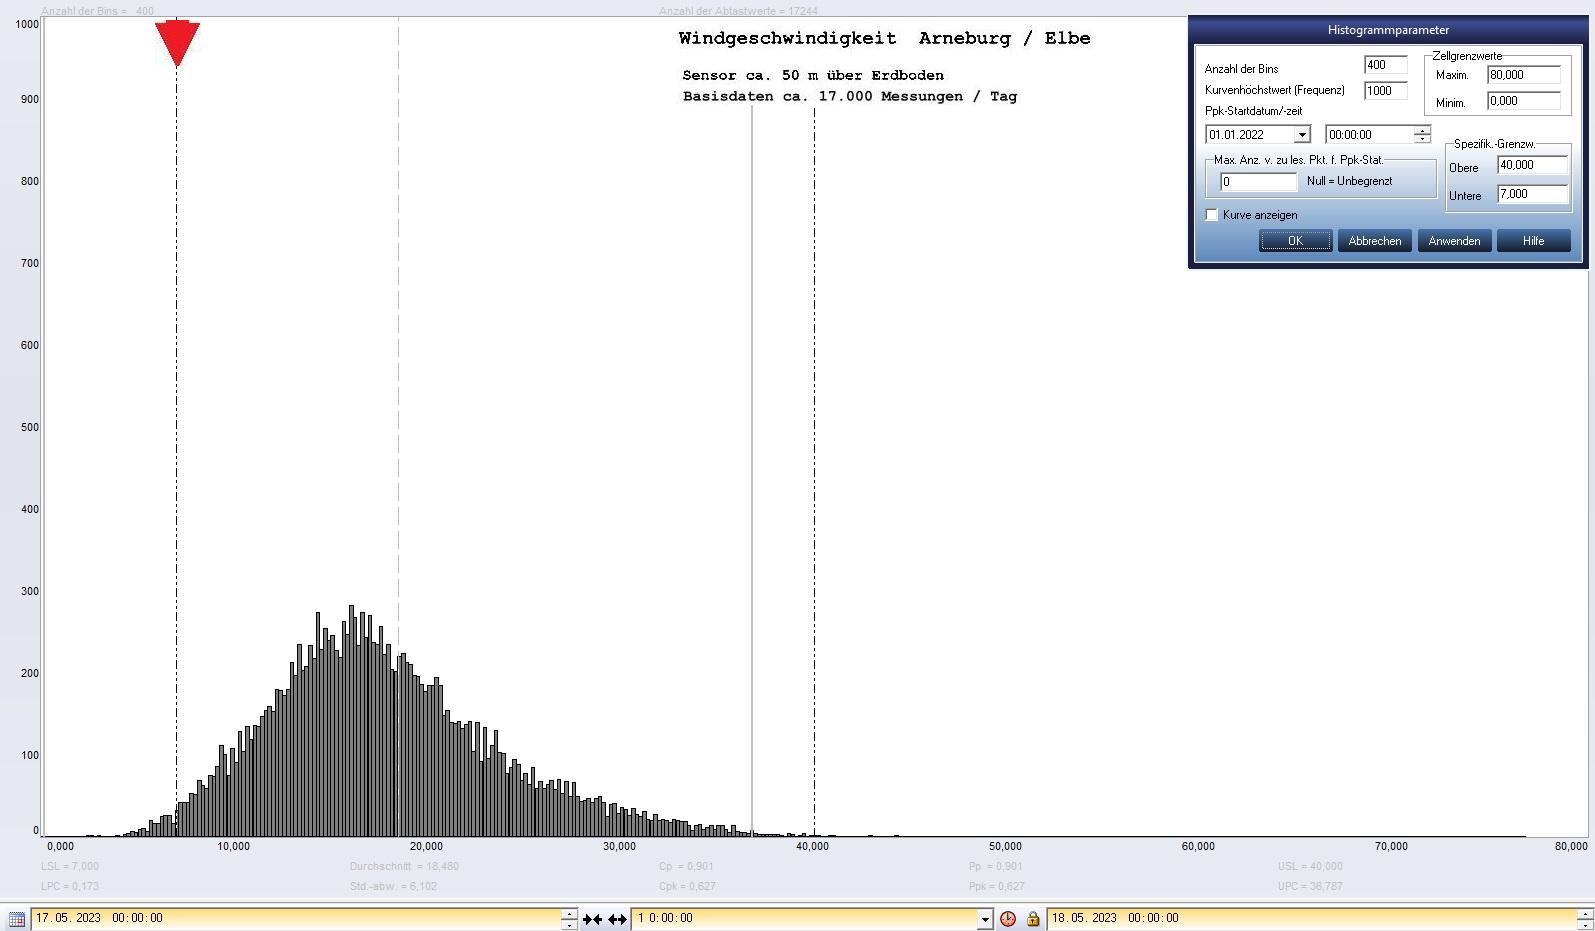 Arneburg Tages-Histogramm Winddaten, 17.05.2023
  Histogramm, Sensor auf Gebude, ca. 50 m ber Erdboden, Basis: 5s-Aufzeichnung